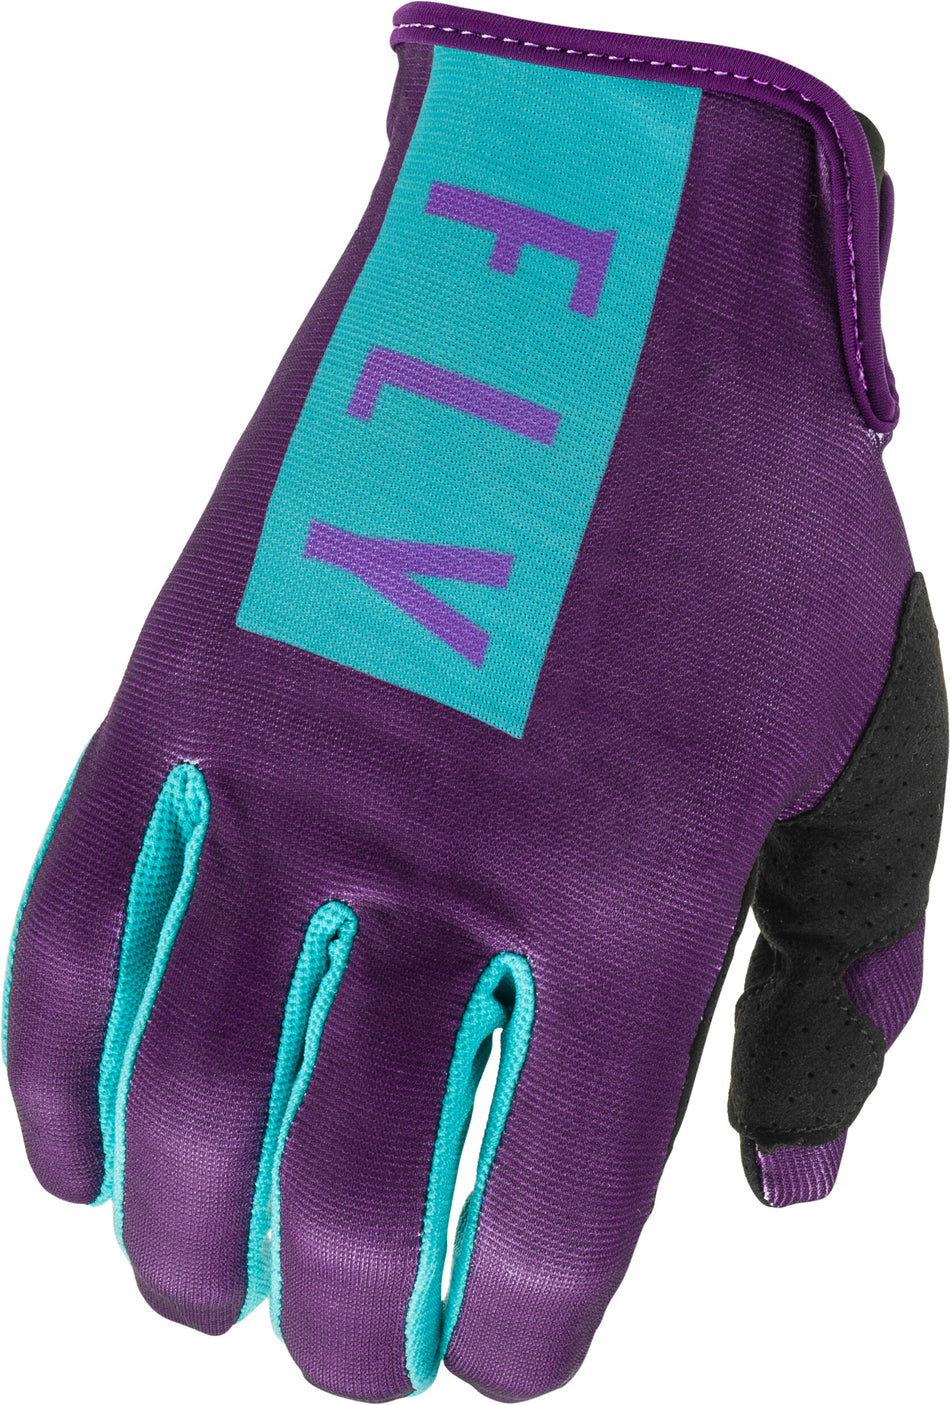 FLY RACING Women's Lite Gloves Purple/Blue Sz 04 374-61804